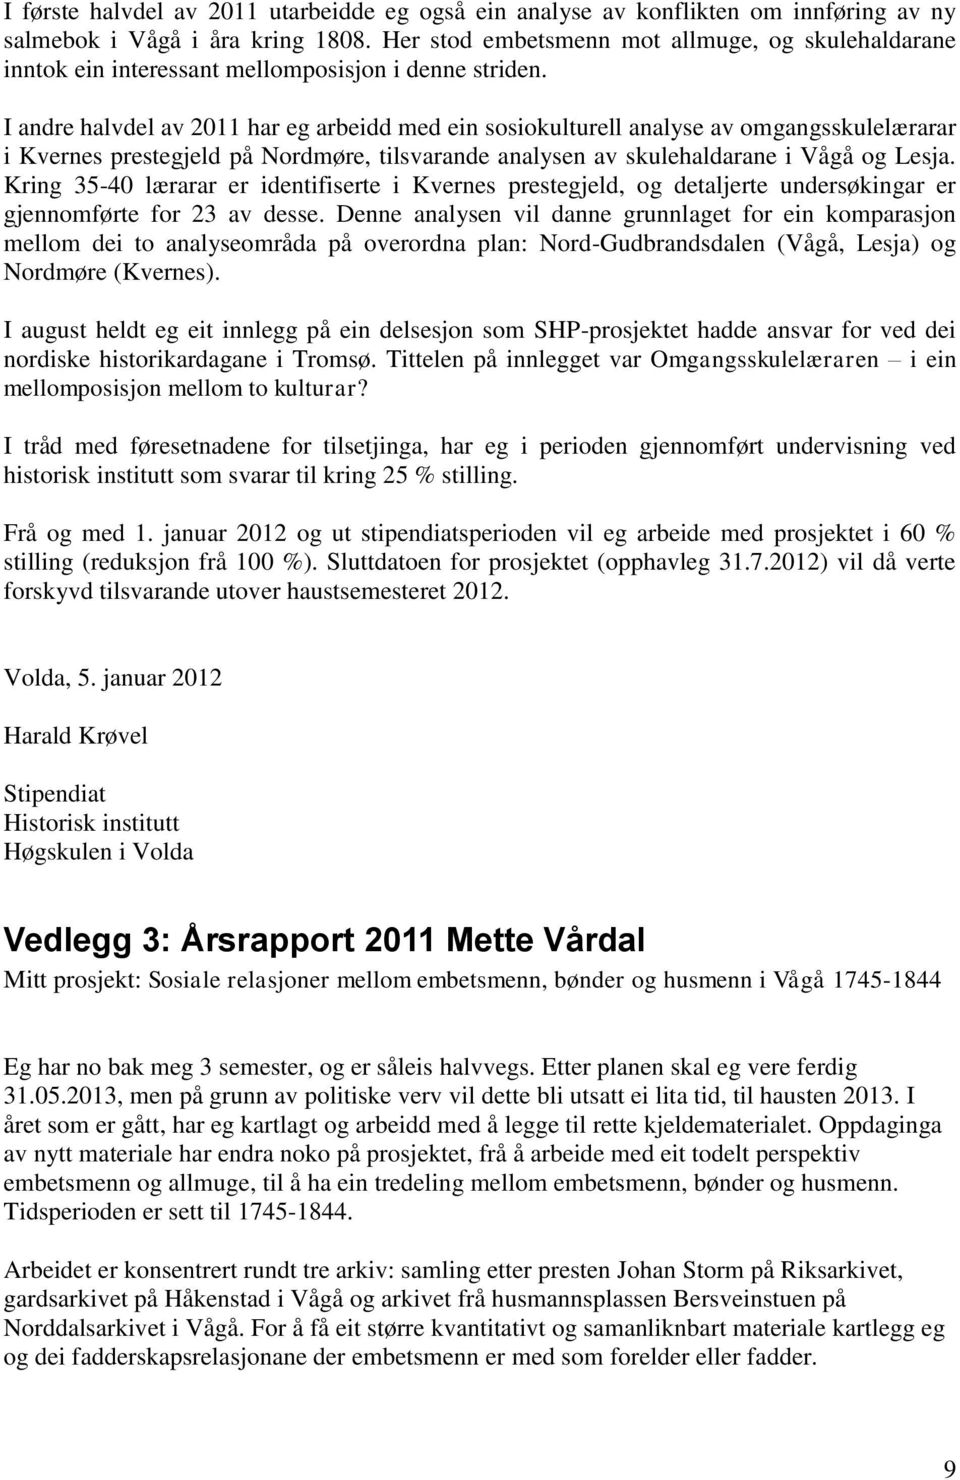 I andre halvdel av 2011 har eg arbeidd med ein sosiokulturell analyse av omgangsskulelærarar i Kvernes prestegjeld på Nordmøre, tilsvarande analysen av skulehaldarane i Vågå og Lesja.